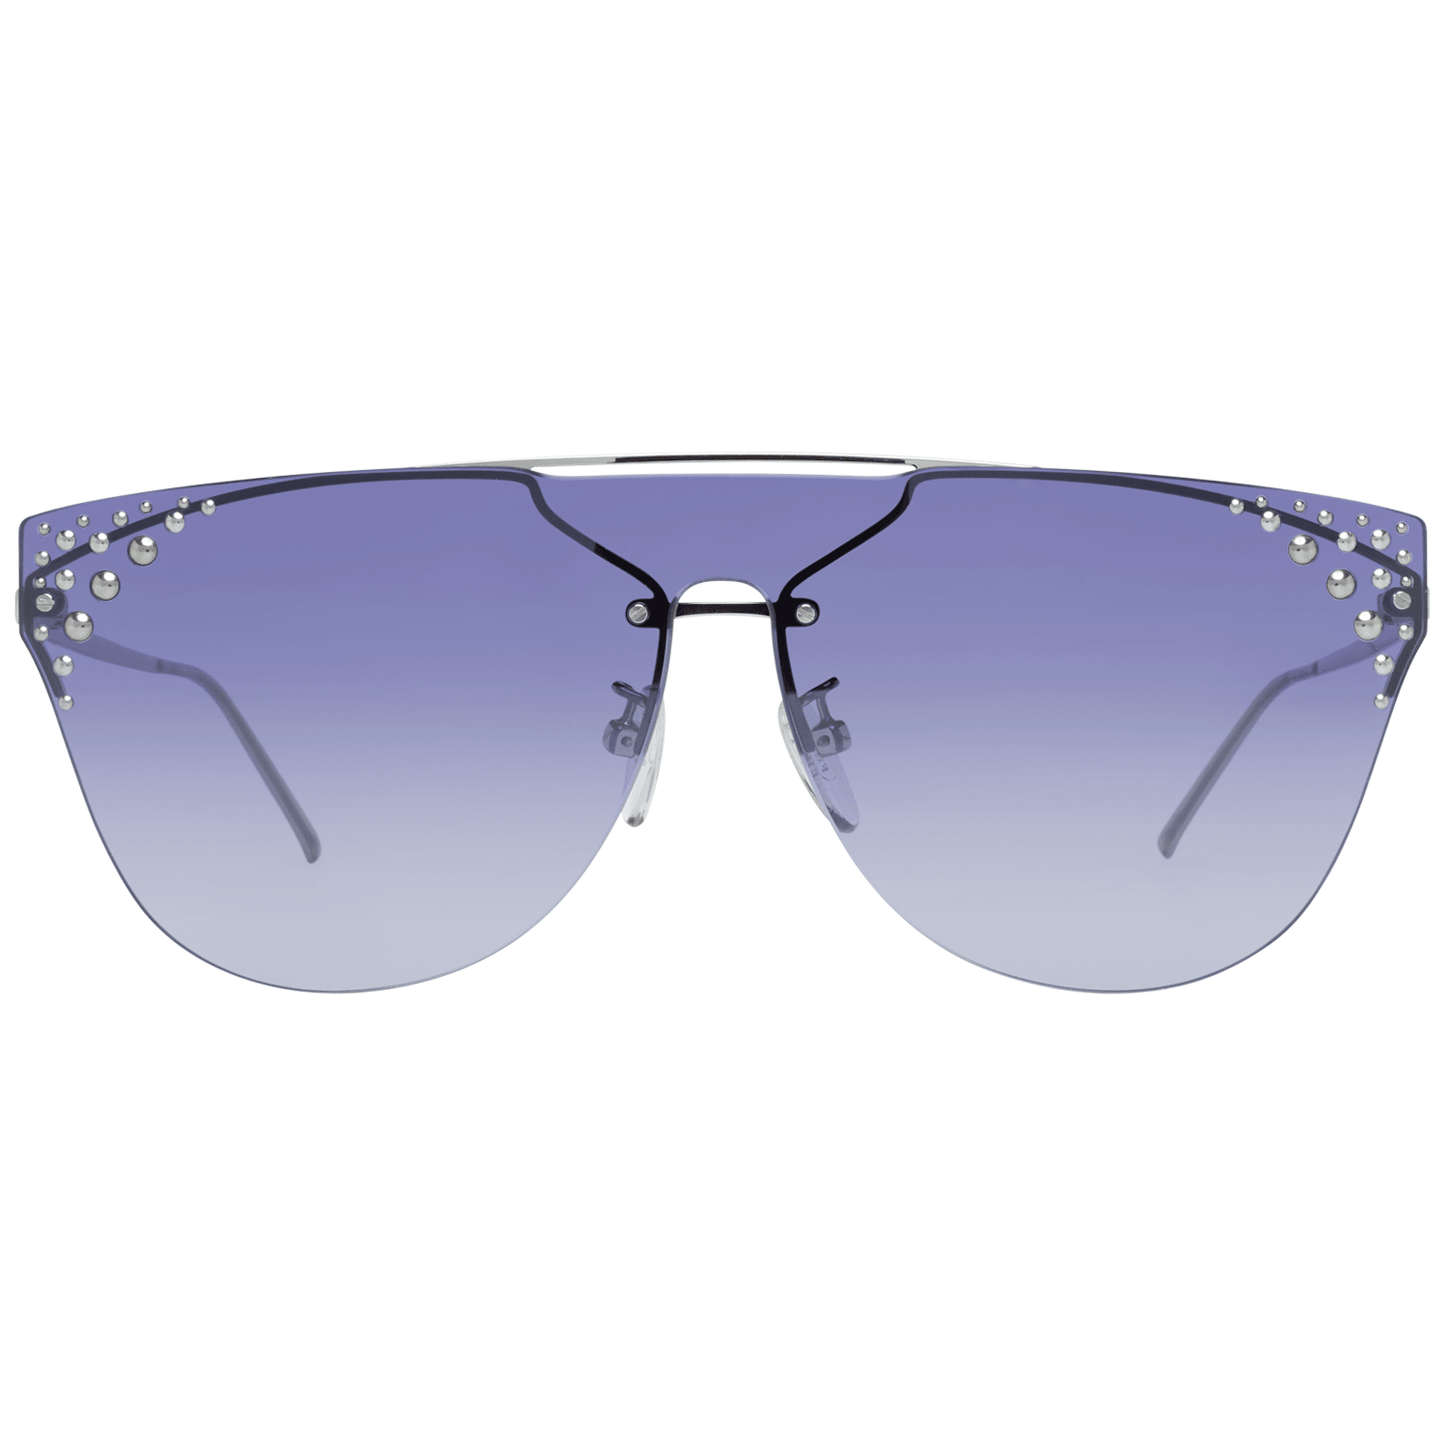 Furla Silver Women Sunglasses